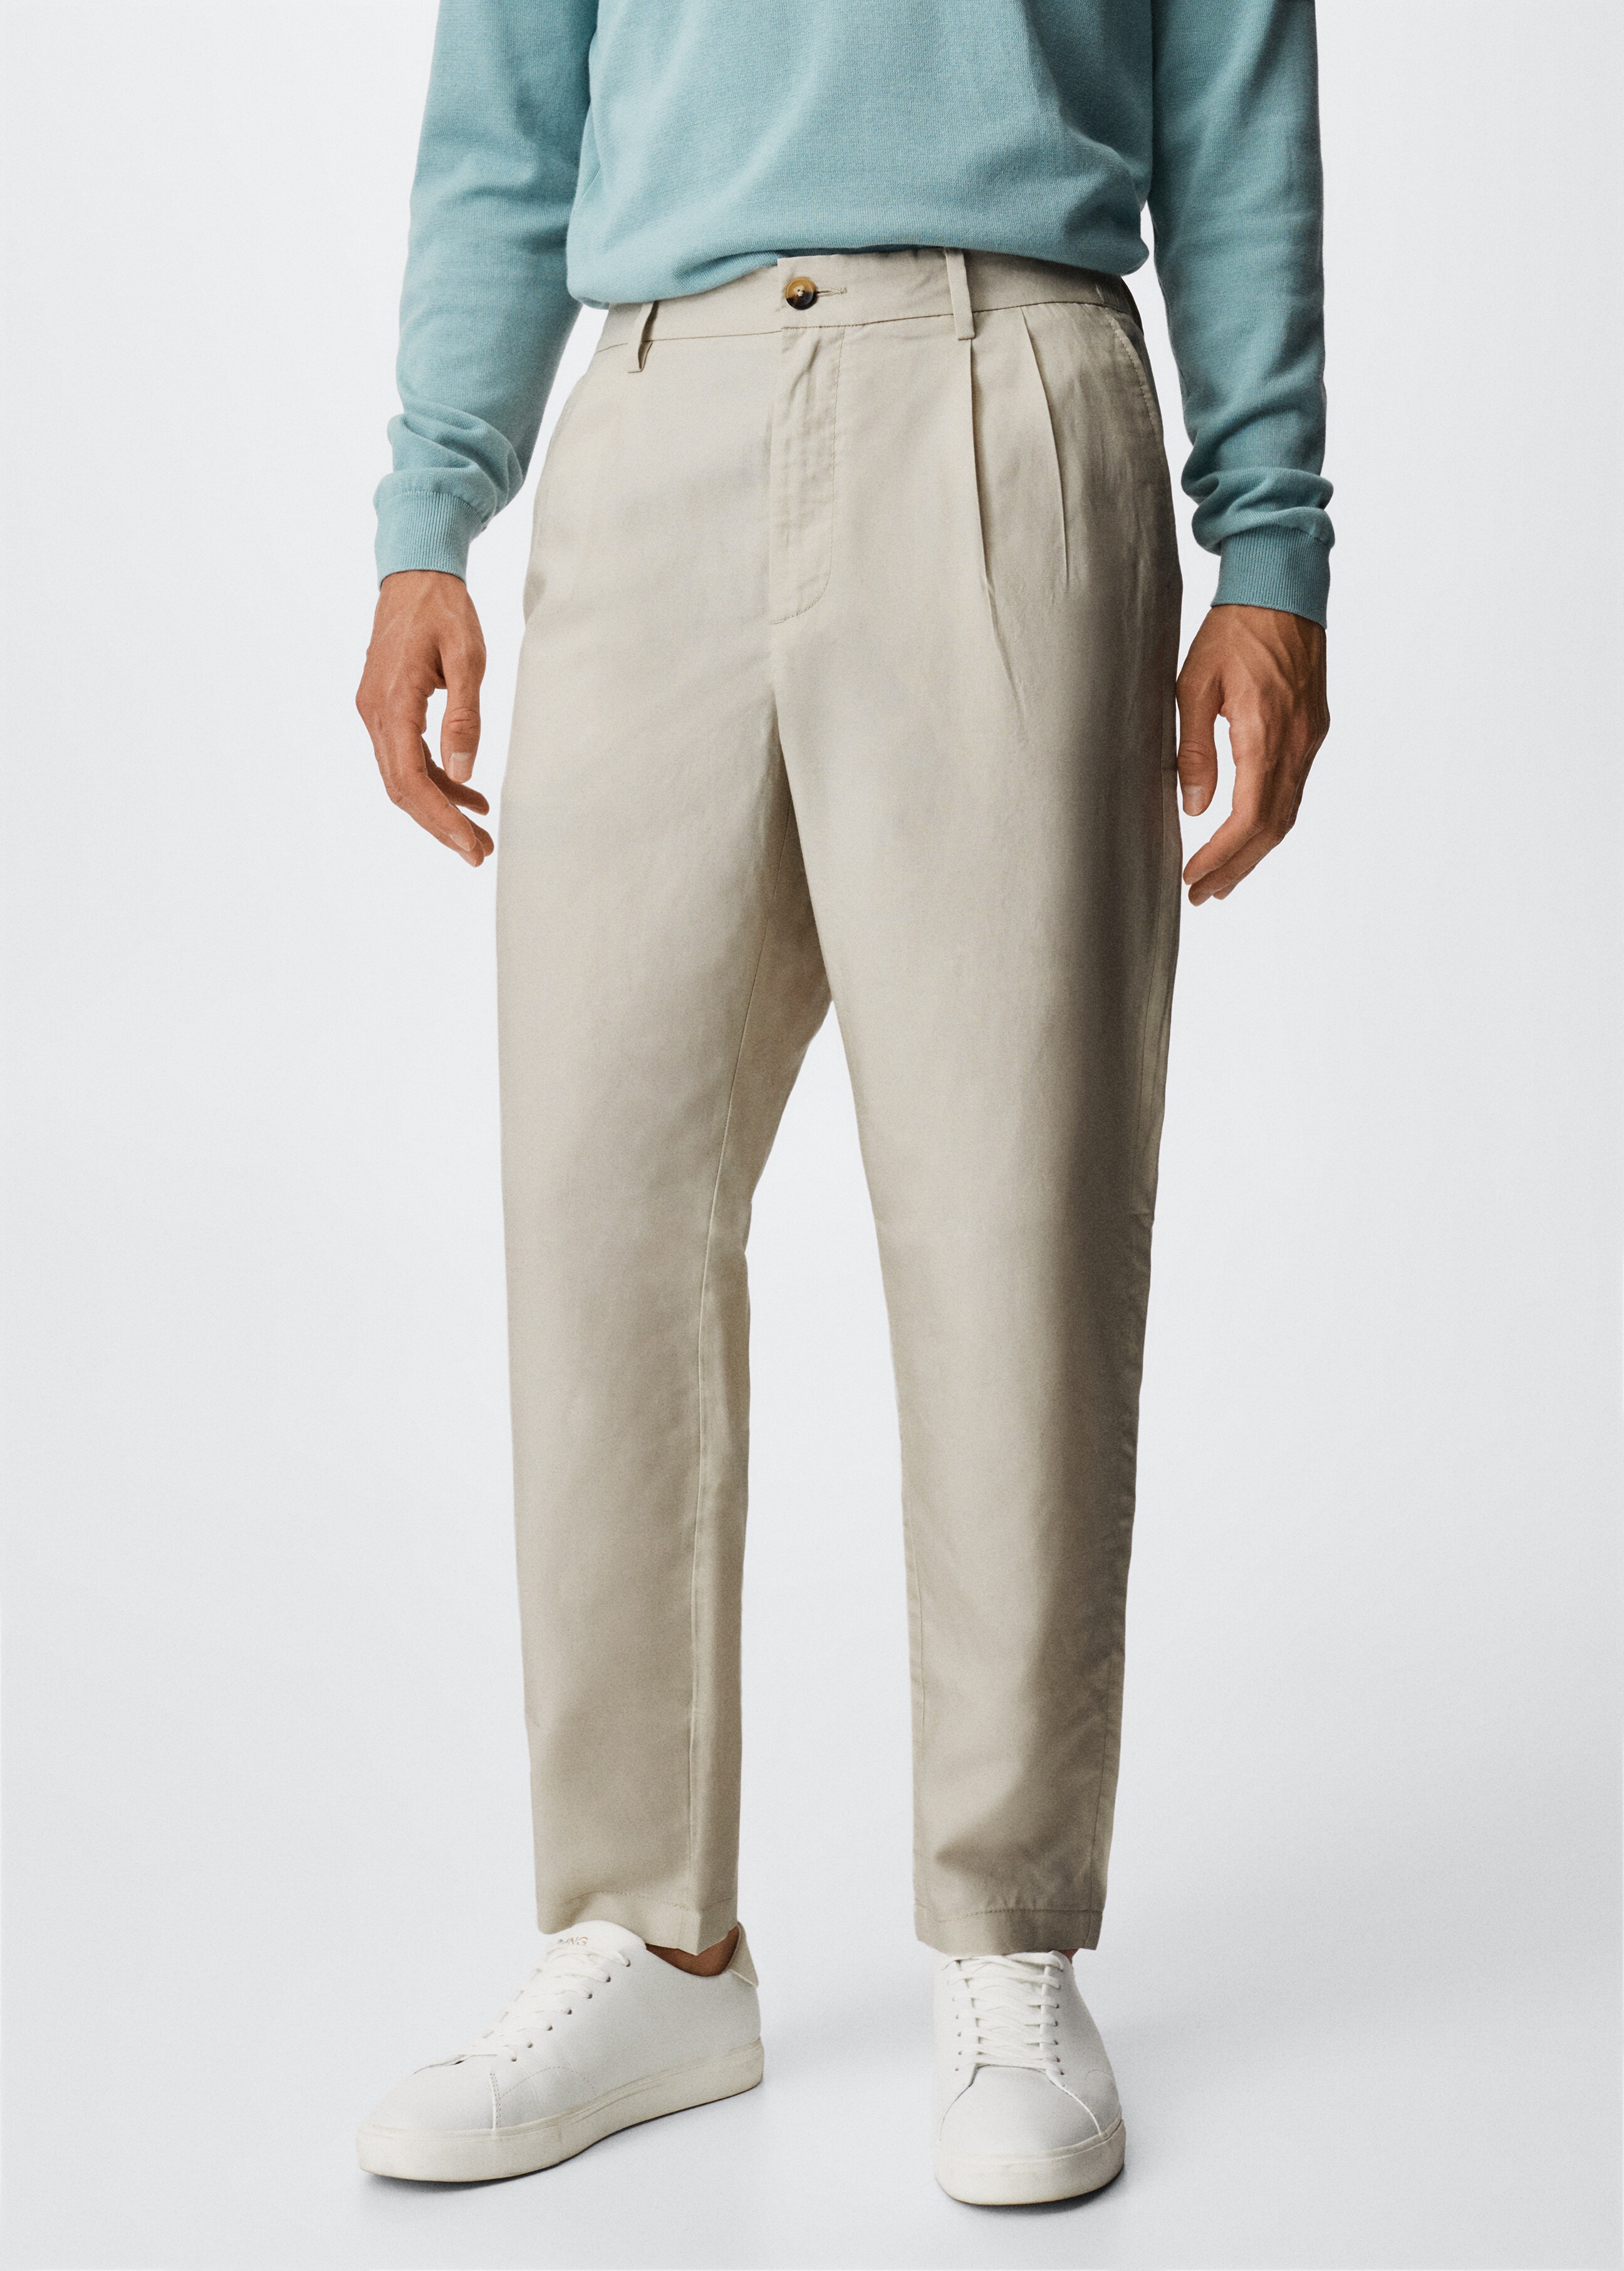 Pantalón lyocell lino pinzas - Plano medio